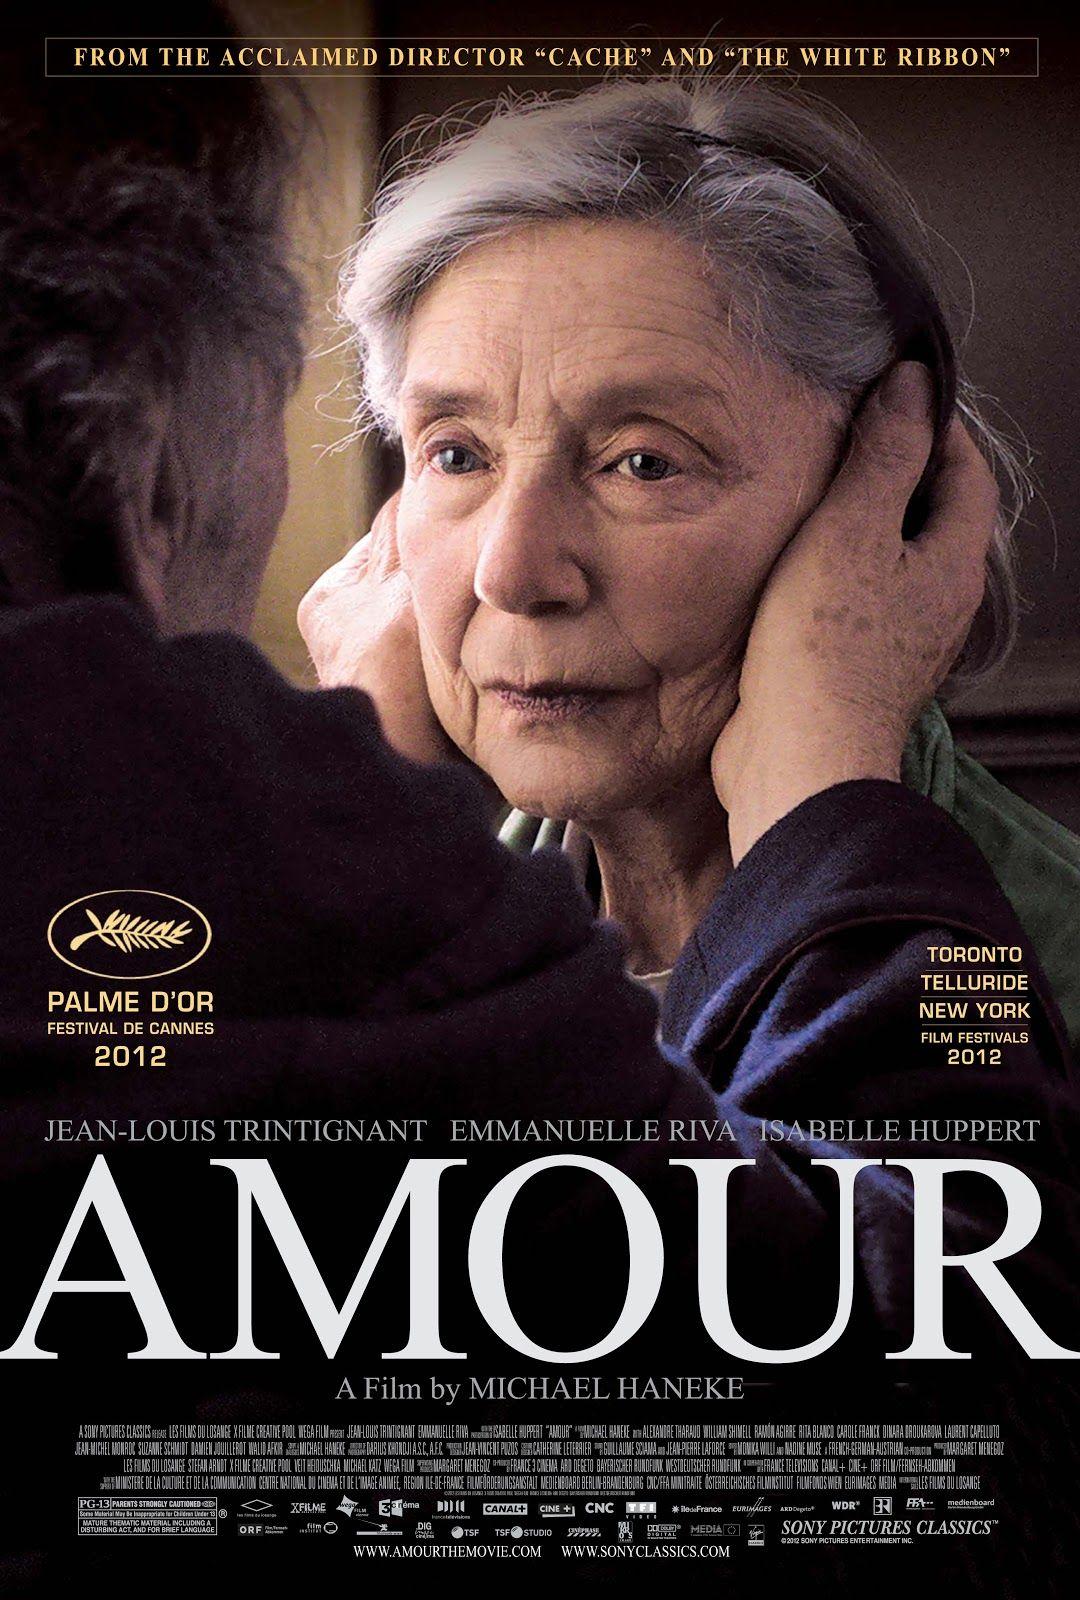 Película "Amour" de Michael Haneke en Cannes